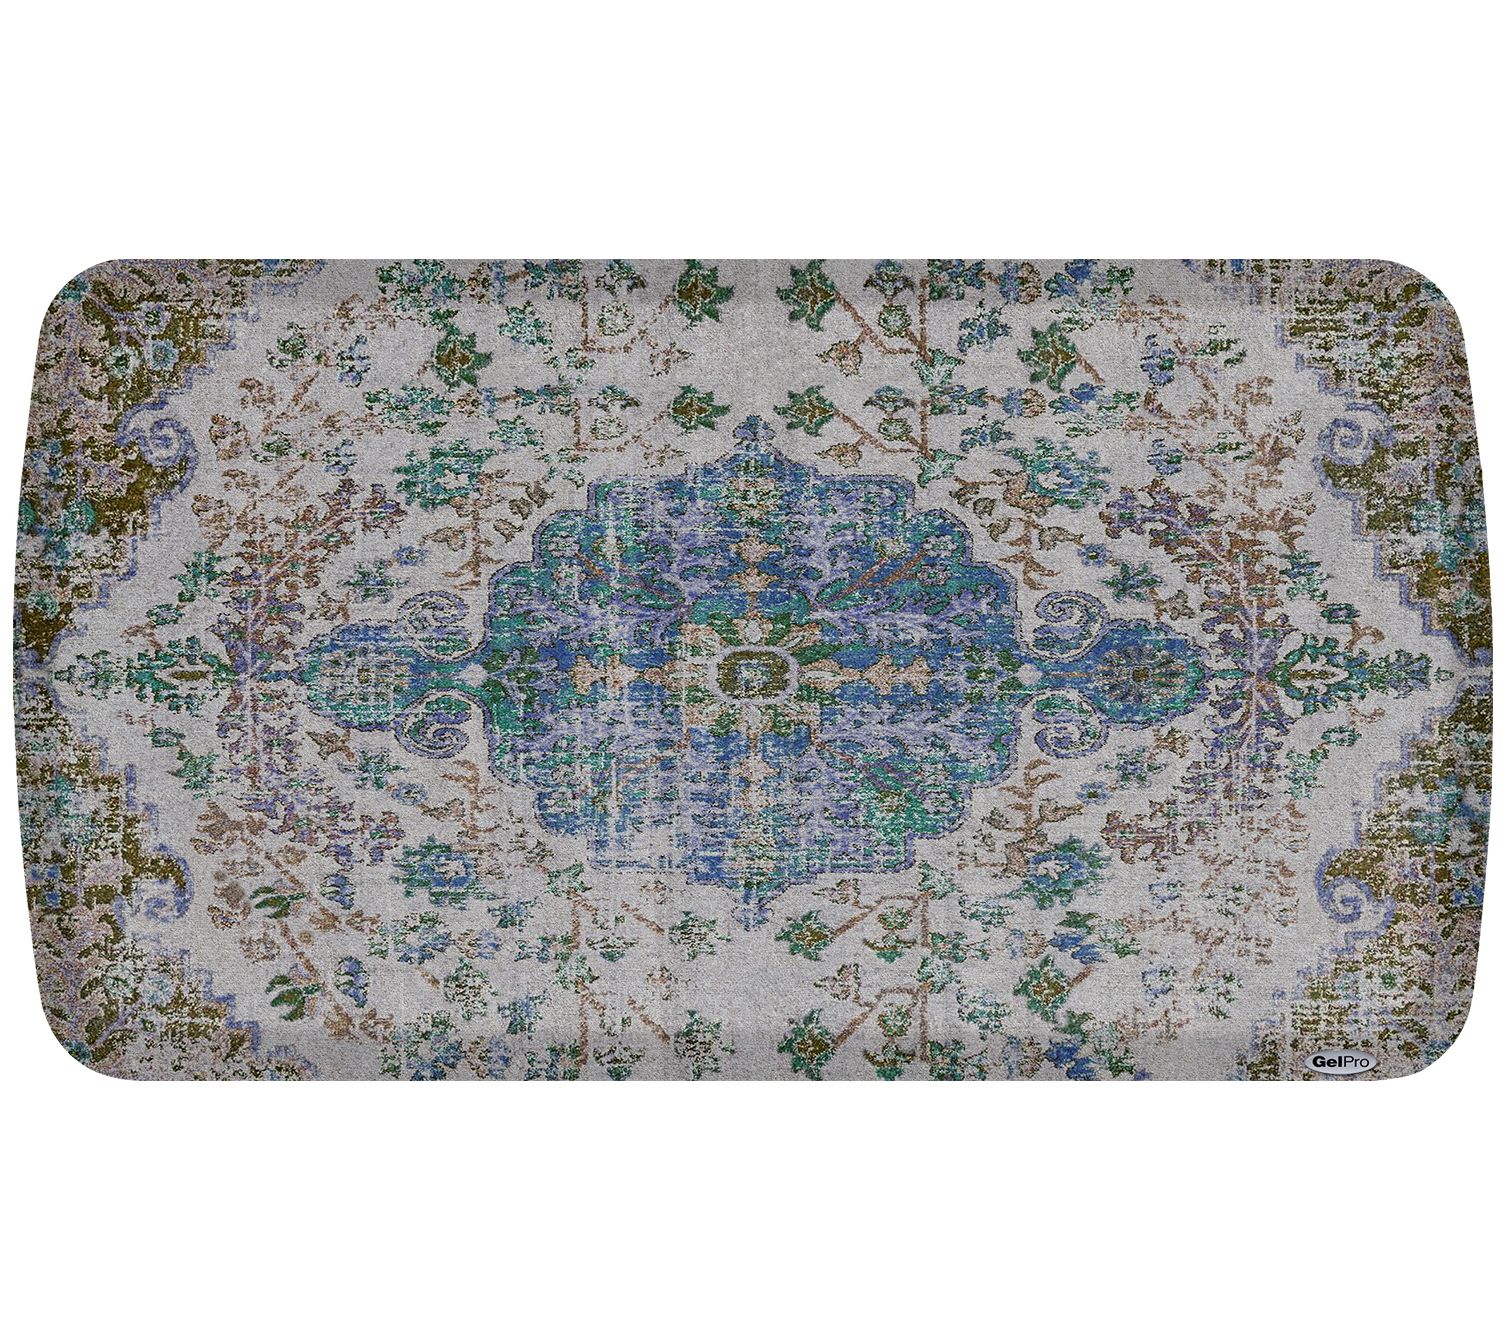 GelPro Grasscloth Gray Kitchen Mat, 18 in x 30 in 